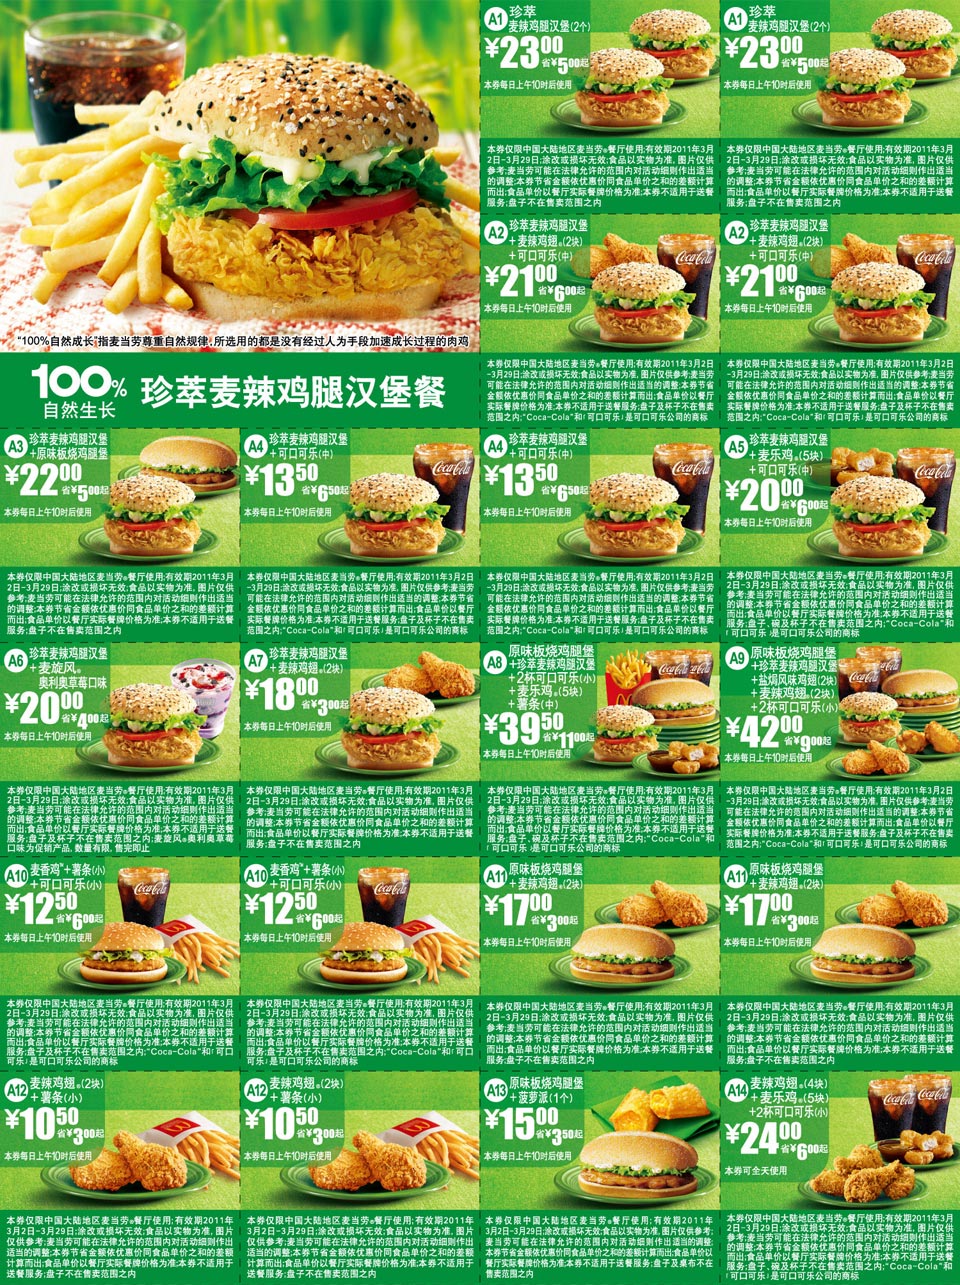 优惠券图片:麦当劳100%自然生长珍萃麦辣鸡腿汉堡餐优惠券2011年3月整张打印版本 有效期2011年03月2日-2011年03月29日